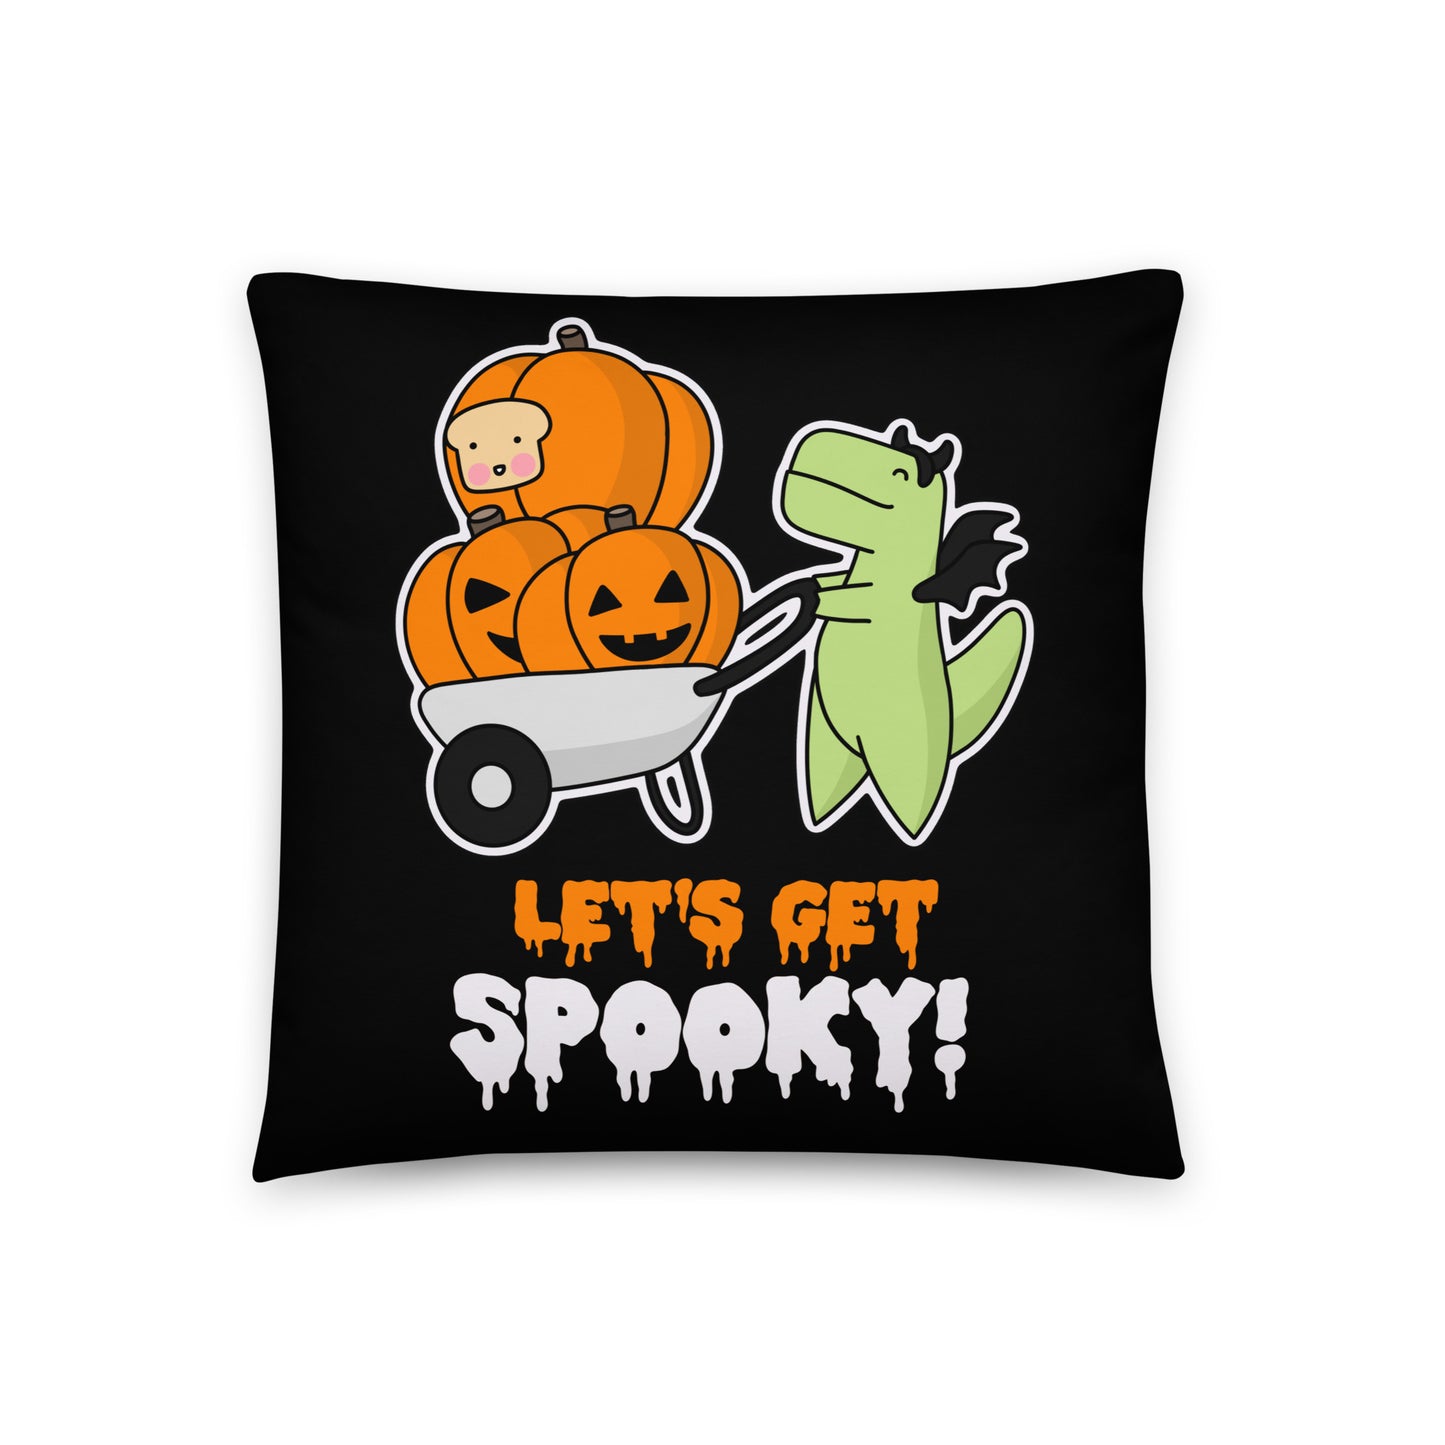 Let's Get Spooky Pillow